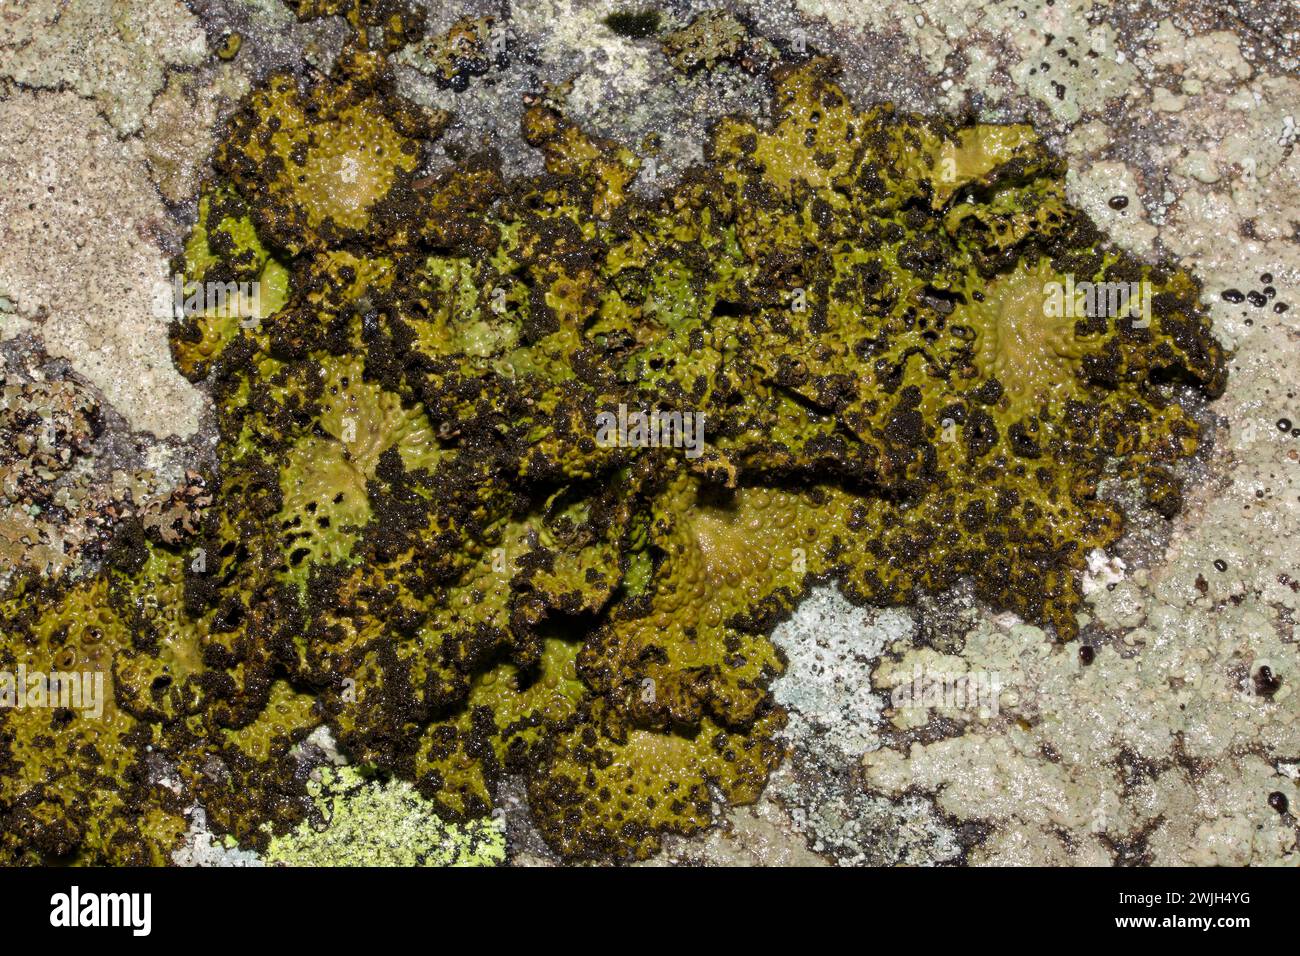 La Lasallia pustulata (Trippa rocciosa) è un lichene foglioso che si trova su rocce ricche di nutrienti, acide, costiere o montane. Si verifica principalmente nell'emisfero N. Foto Stock